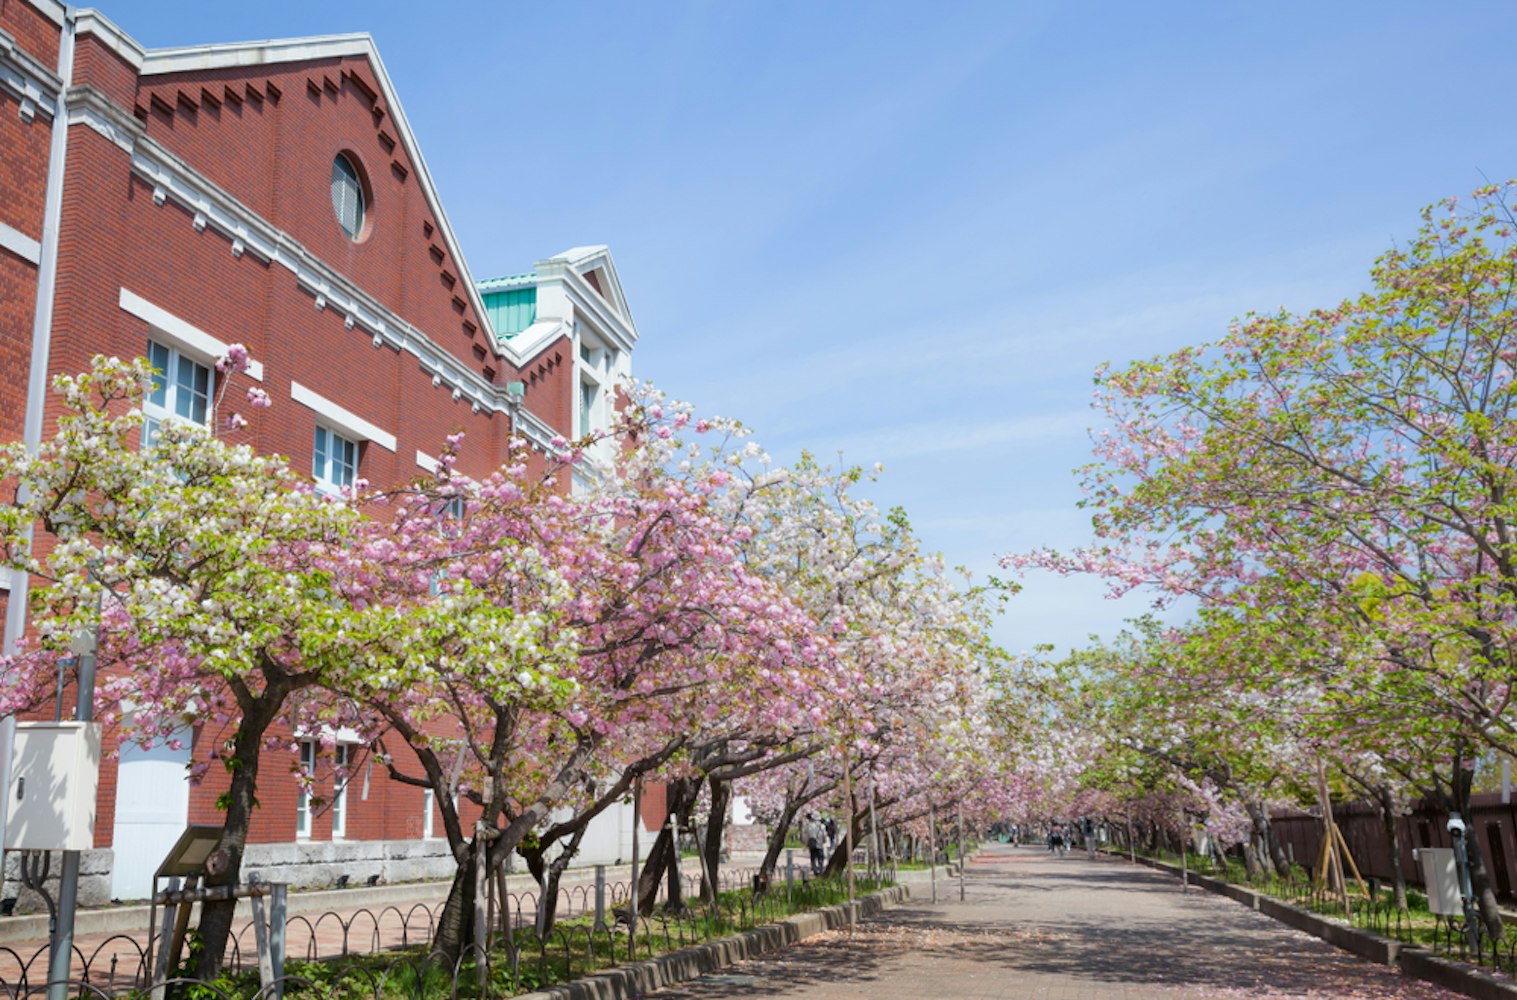 Mint Museum (Zohei hakubutsukan) and street with cherry trees blooming (Sakura No Torinuke) in Osaka